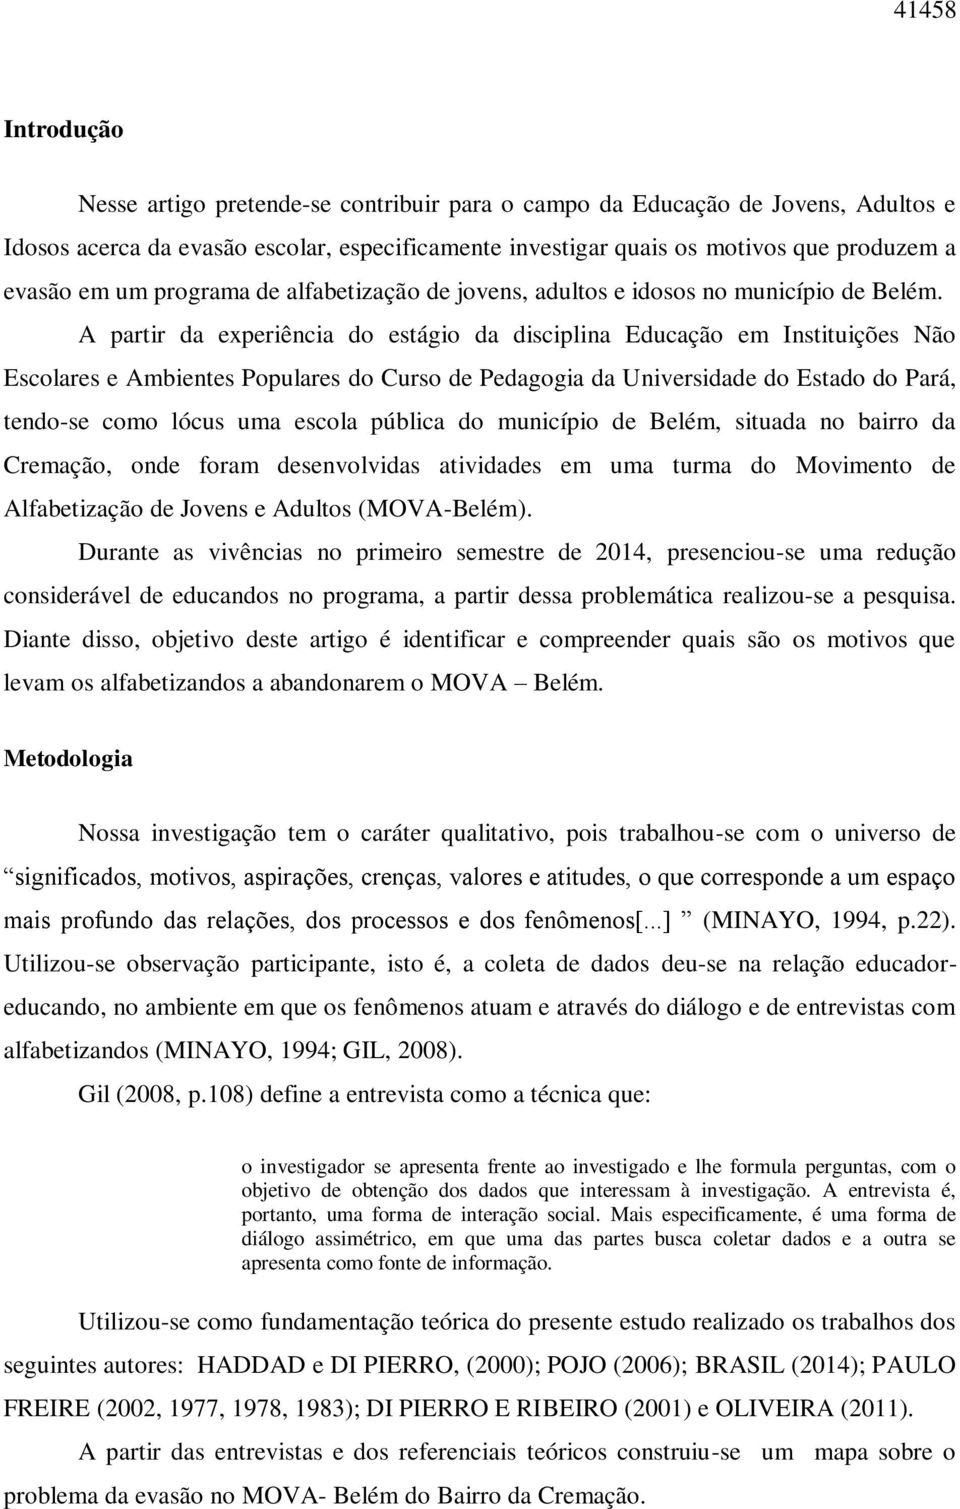 A partir da experiência do estágio da disciplina Educação em Instituições Não Escolares e Ambientes Populares do Curso de Pedagogia da Universidade do Estado do Pará, tendo-se como lócus uma escola